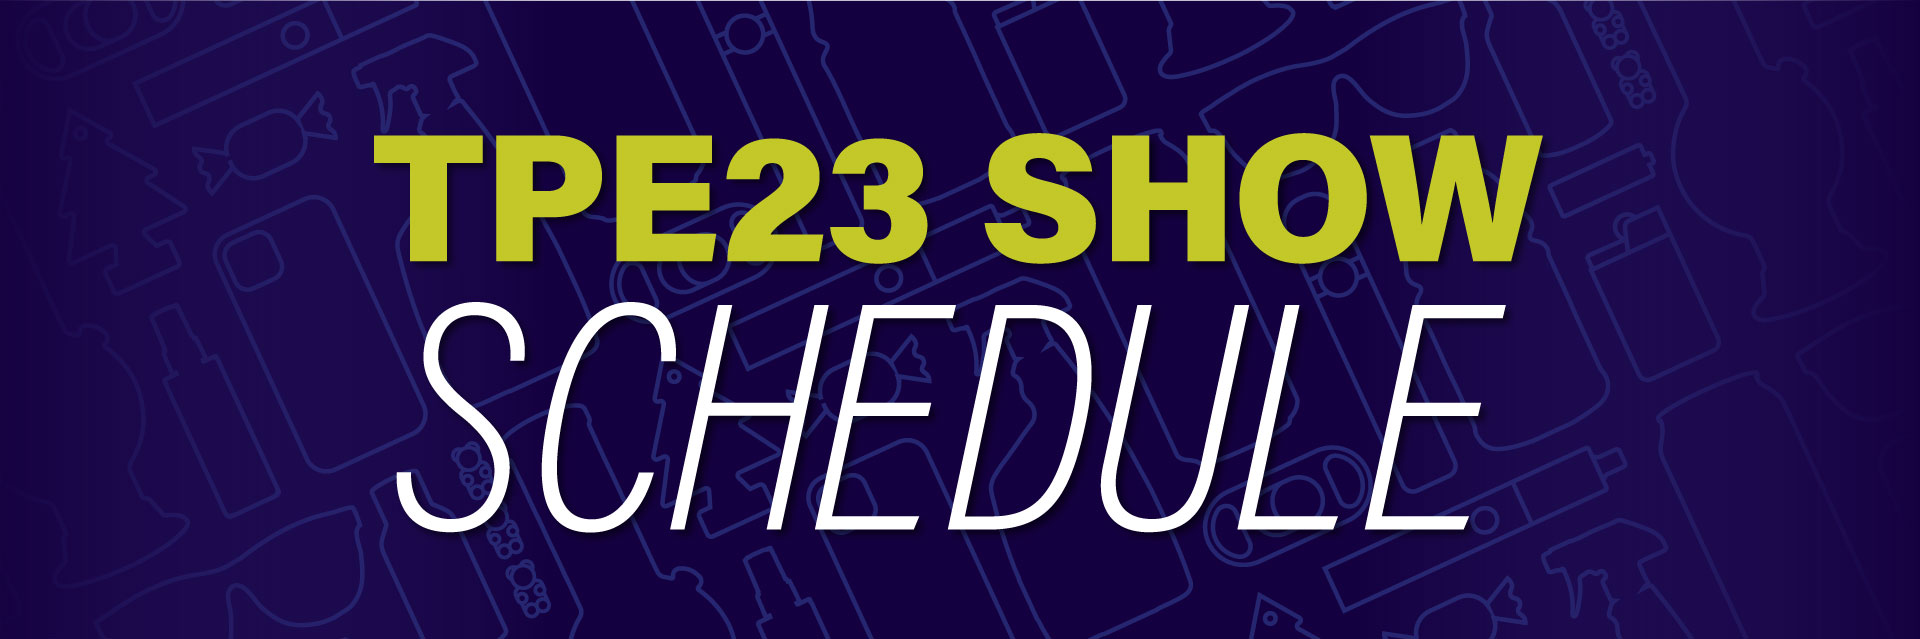 TPE23 Show Schedule